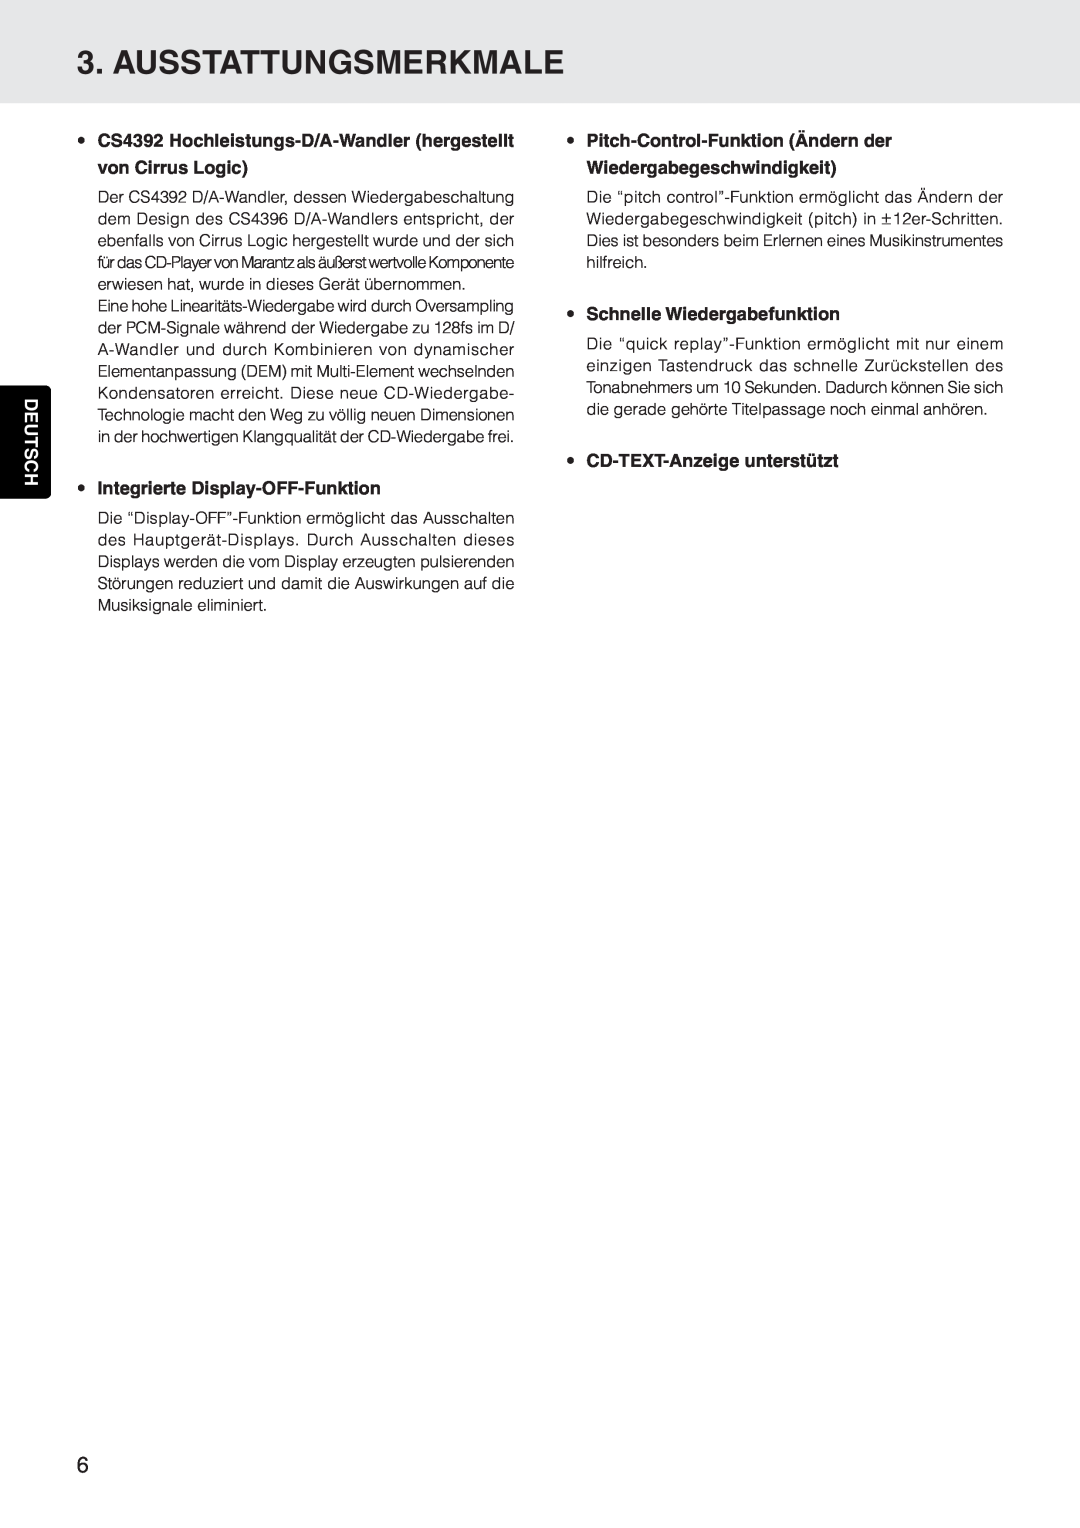 Marantz CD5400 manual Ausstattungsmerkmale, Deutsch, Integrierte Display-OFF-Funktion, Schnelle Wiedergabefunktion 